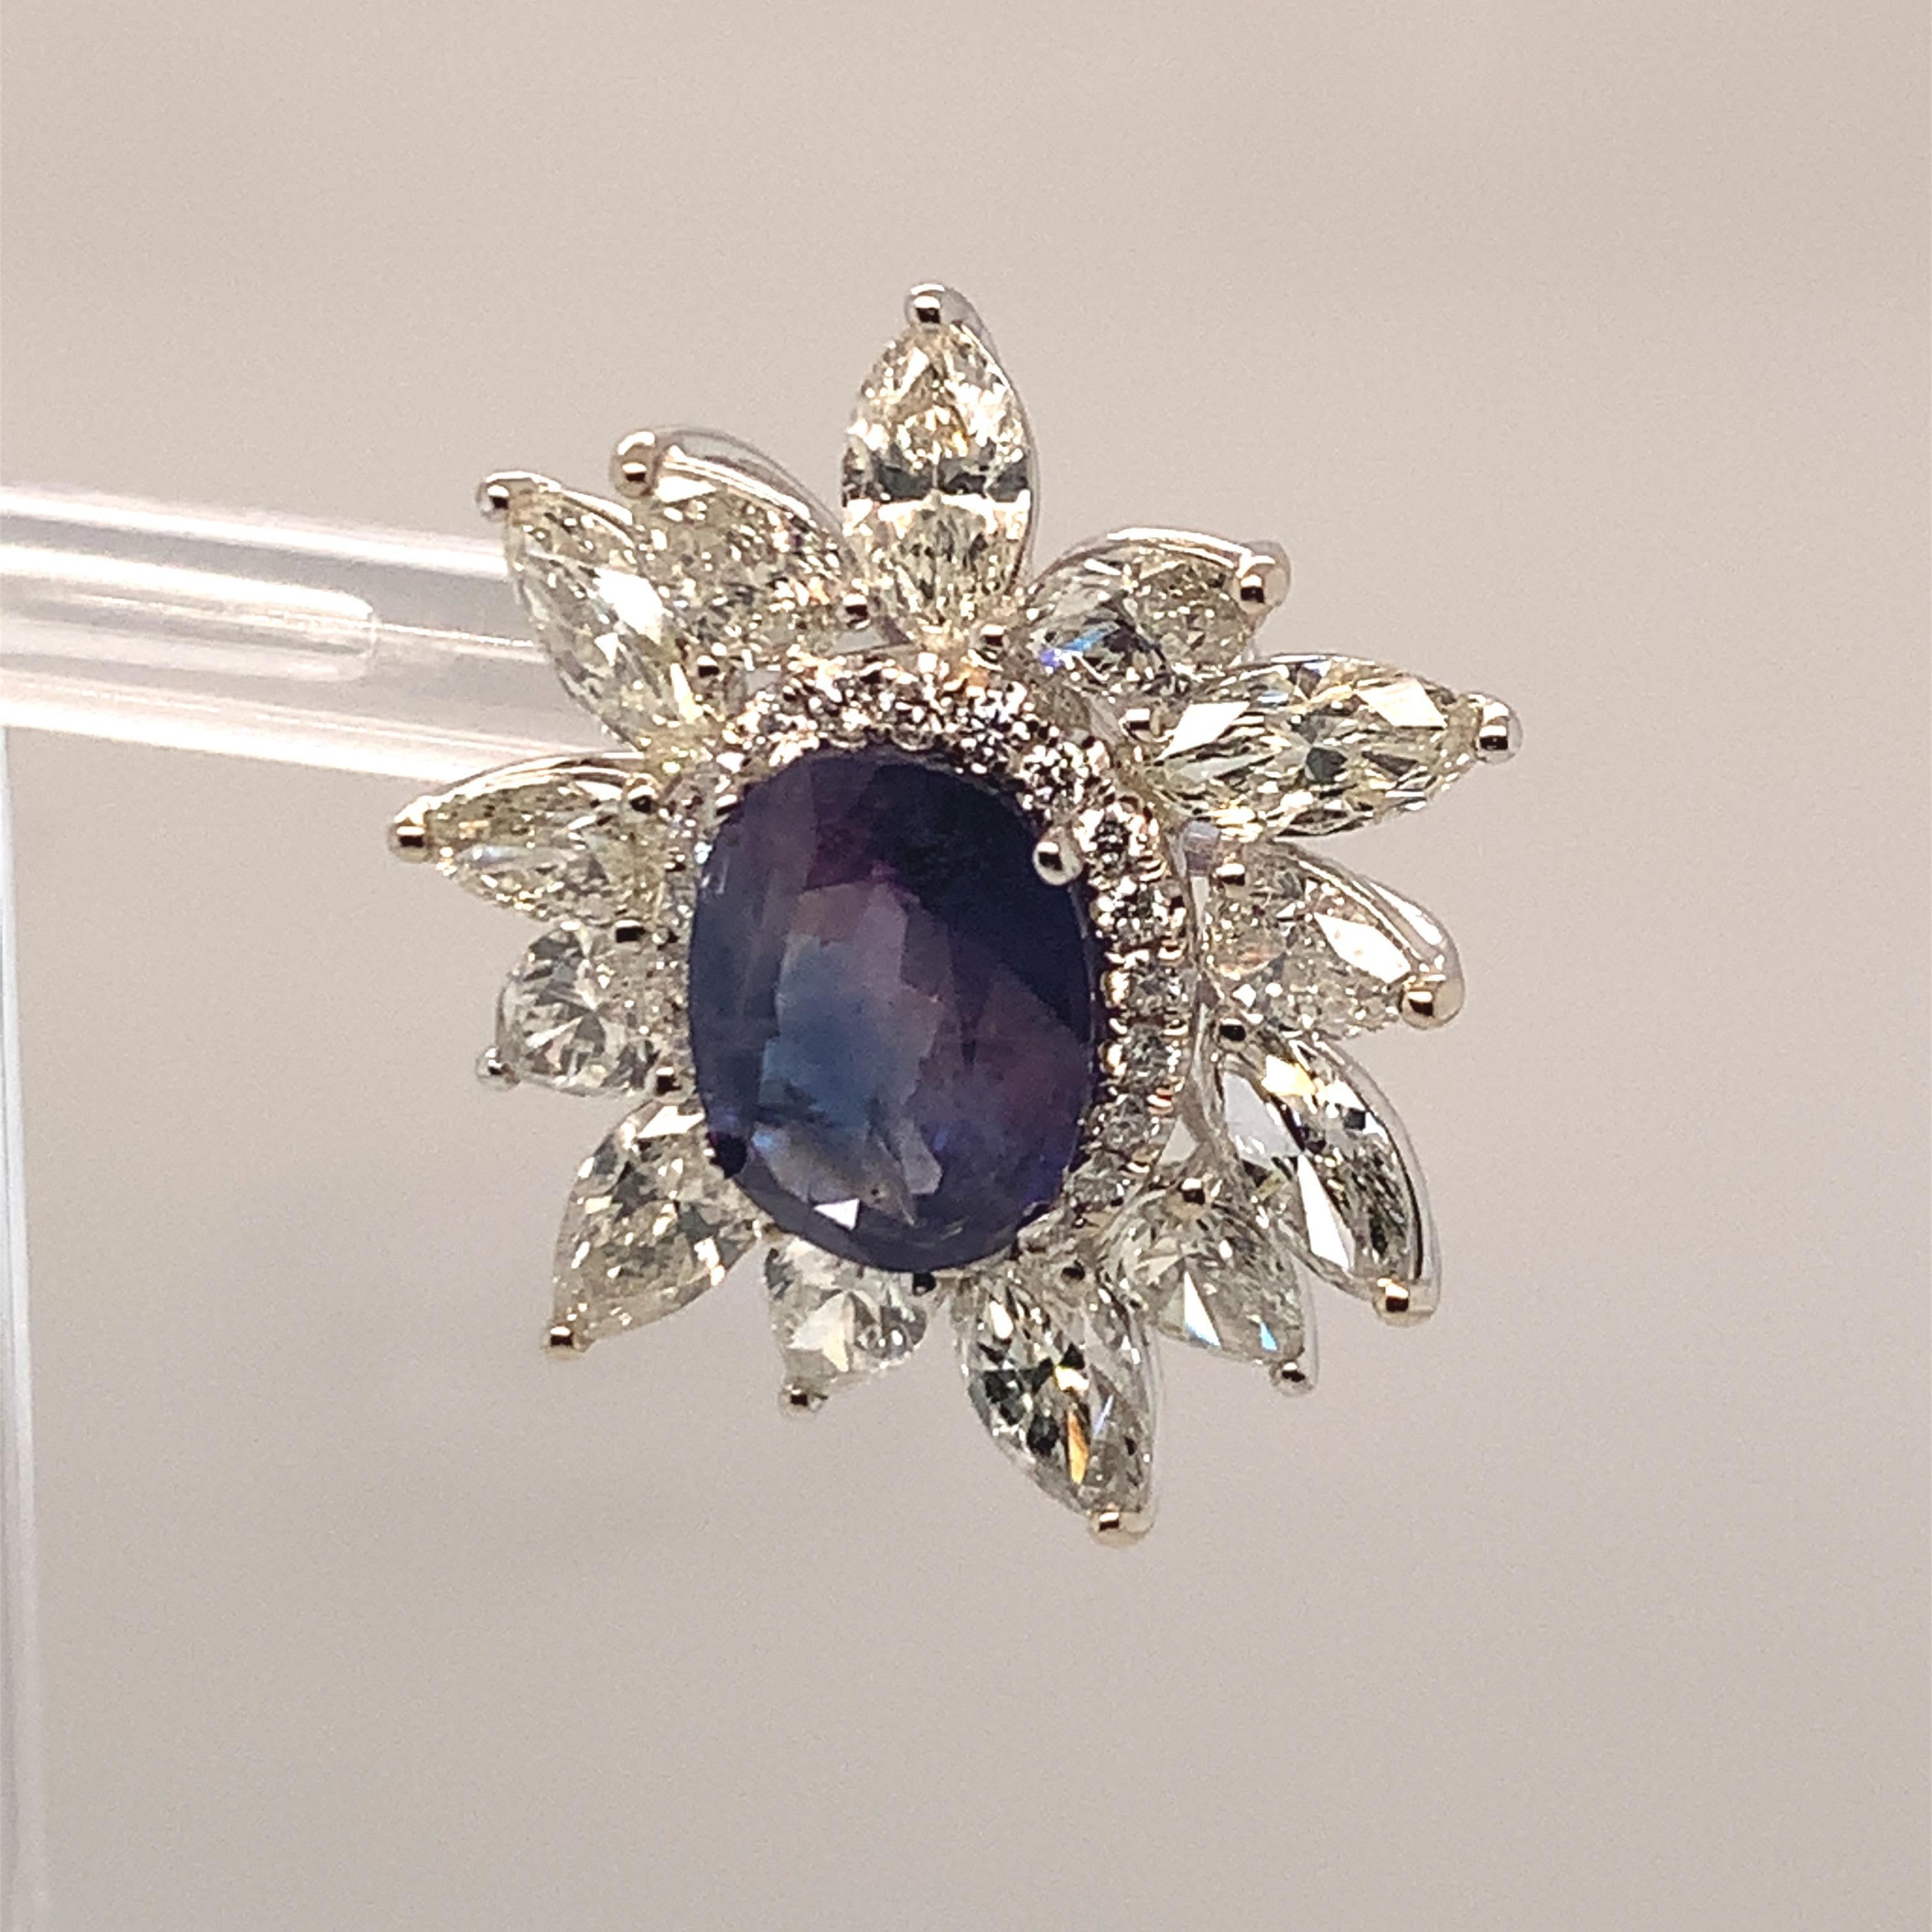 kashmir sapphire earrings